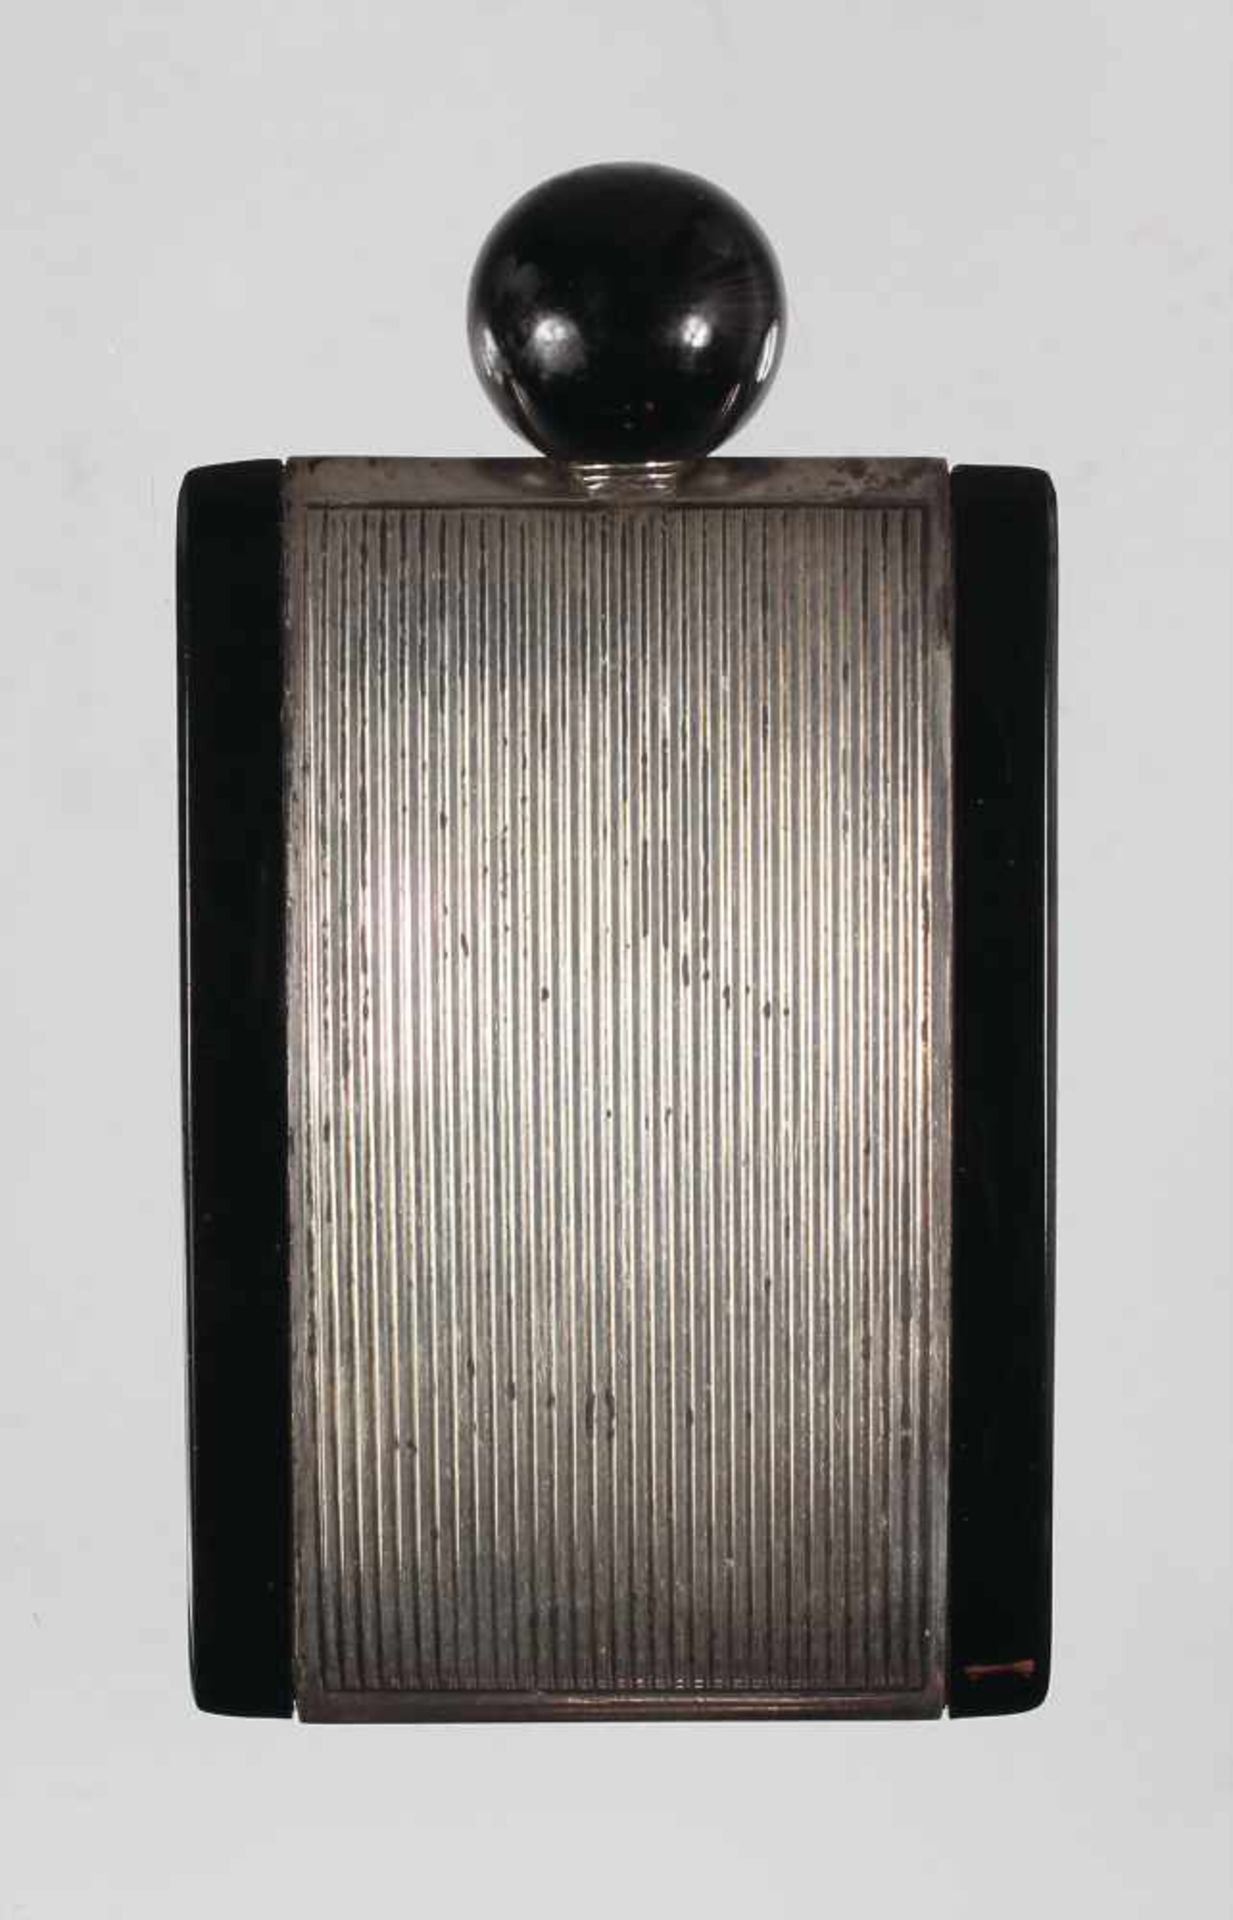 Parfum-Flacon, "ART-DECO" 1920/30er Jahre, Silber 835/000, sig. LIO ? (unleserlich),8521